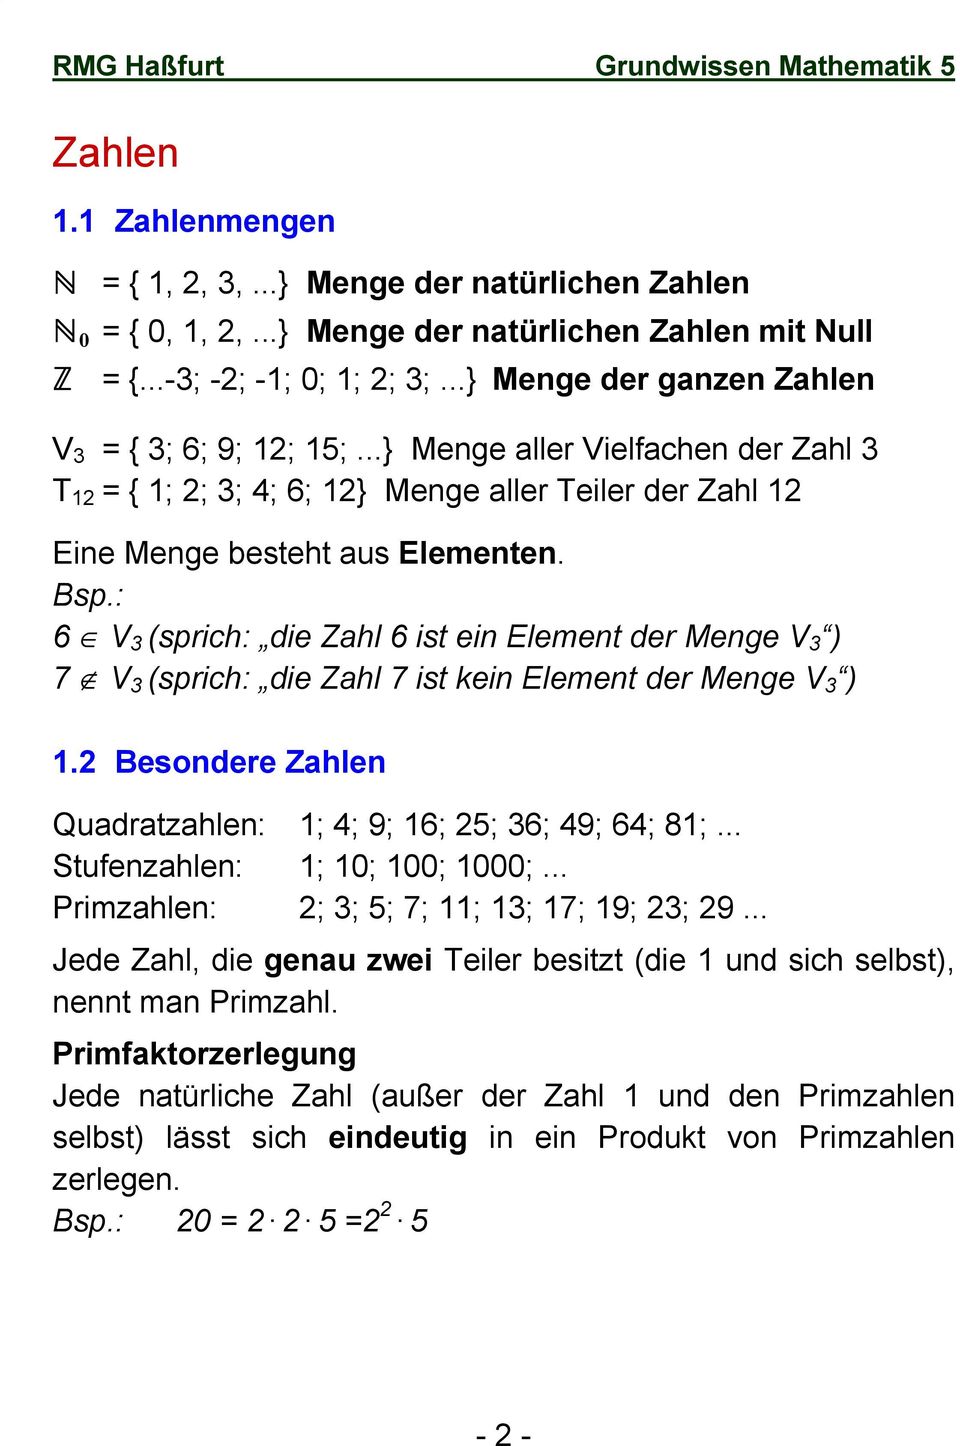 : 6 V 3 (sprich: die Zahl 6 ist ein Element der Menge V 3 ) 7 V 3 (sprich: die Zahl 7 ist kein Element der Menge V 3 ) 1.2 Besondere Zahlen Quadratzahlen: 1; 4; 9; 16; 25; 36; 49; 64; 81;.